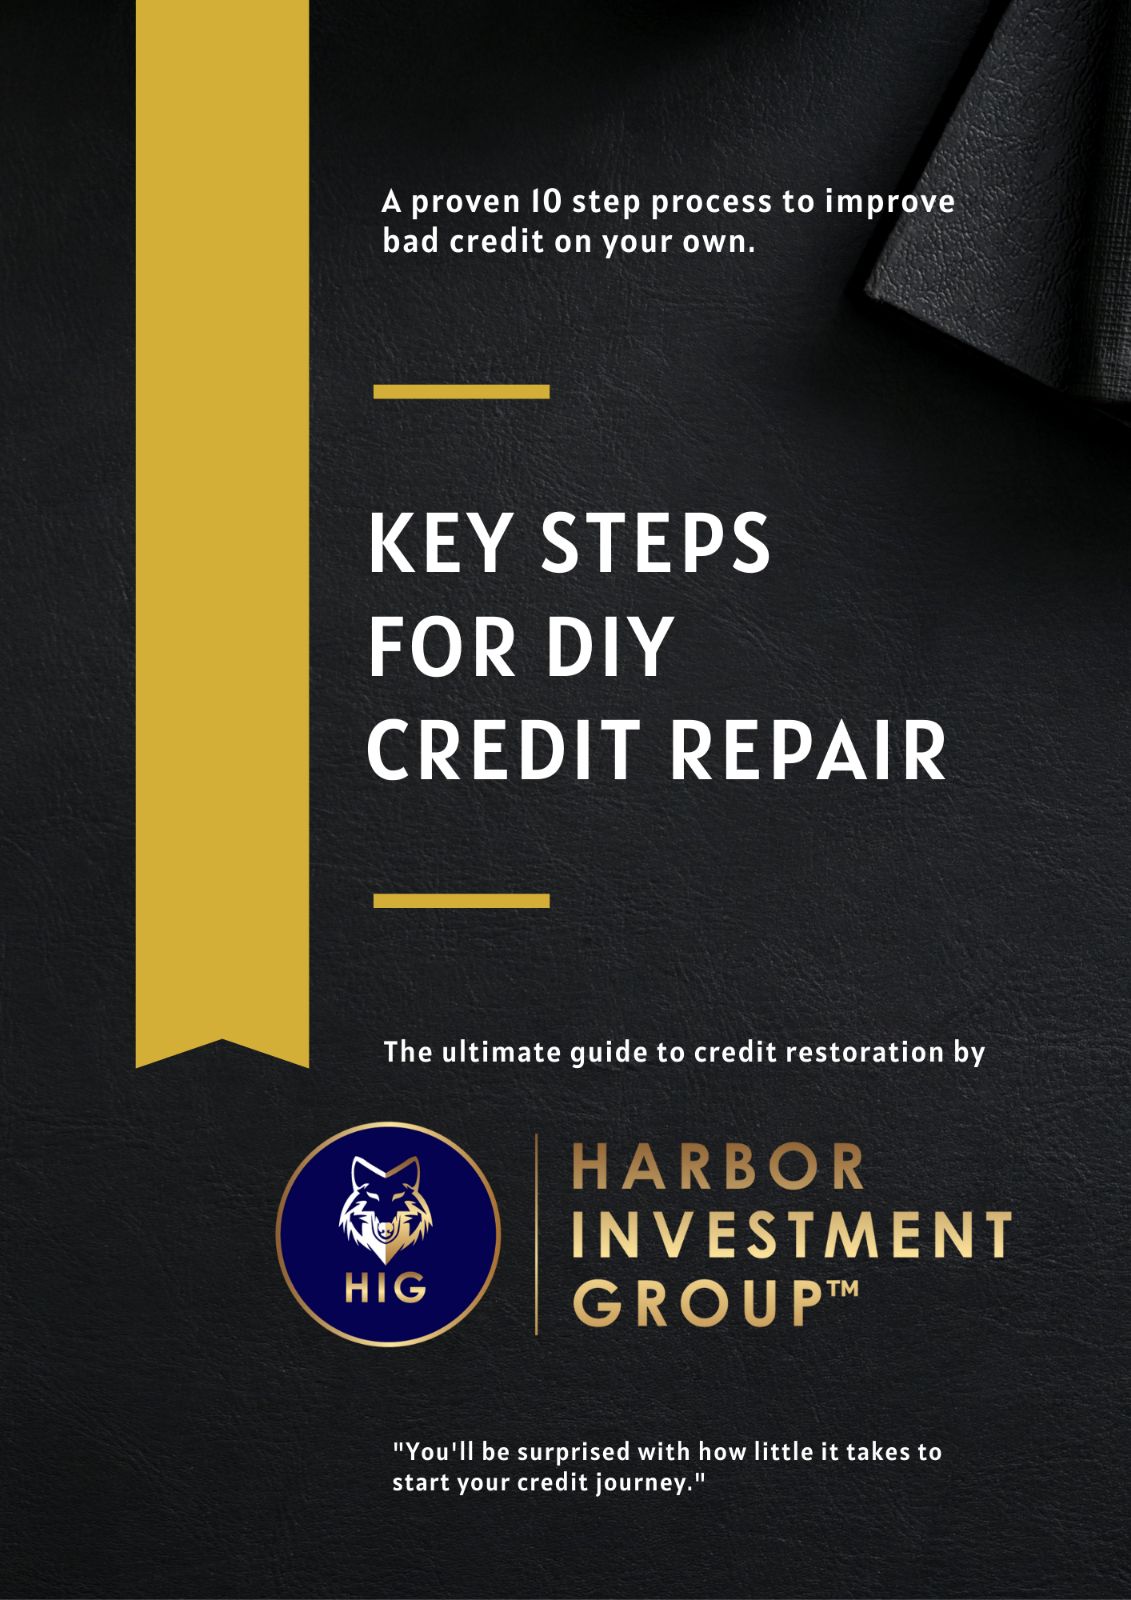 eBook for credit restoration services